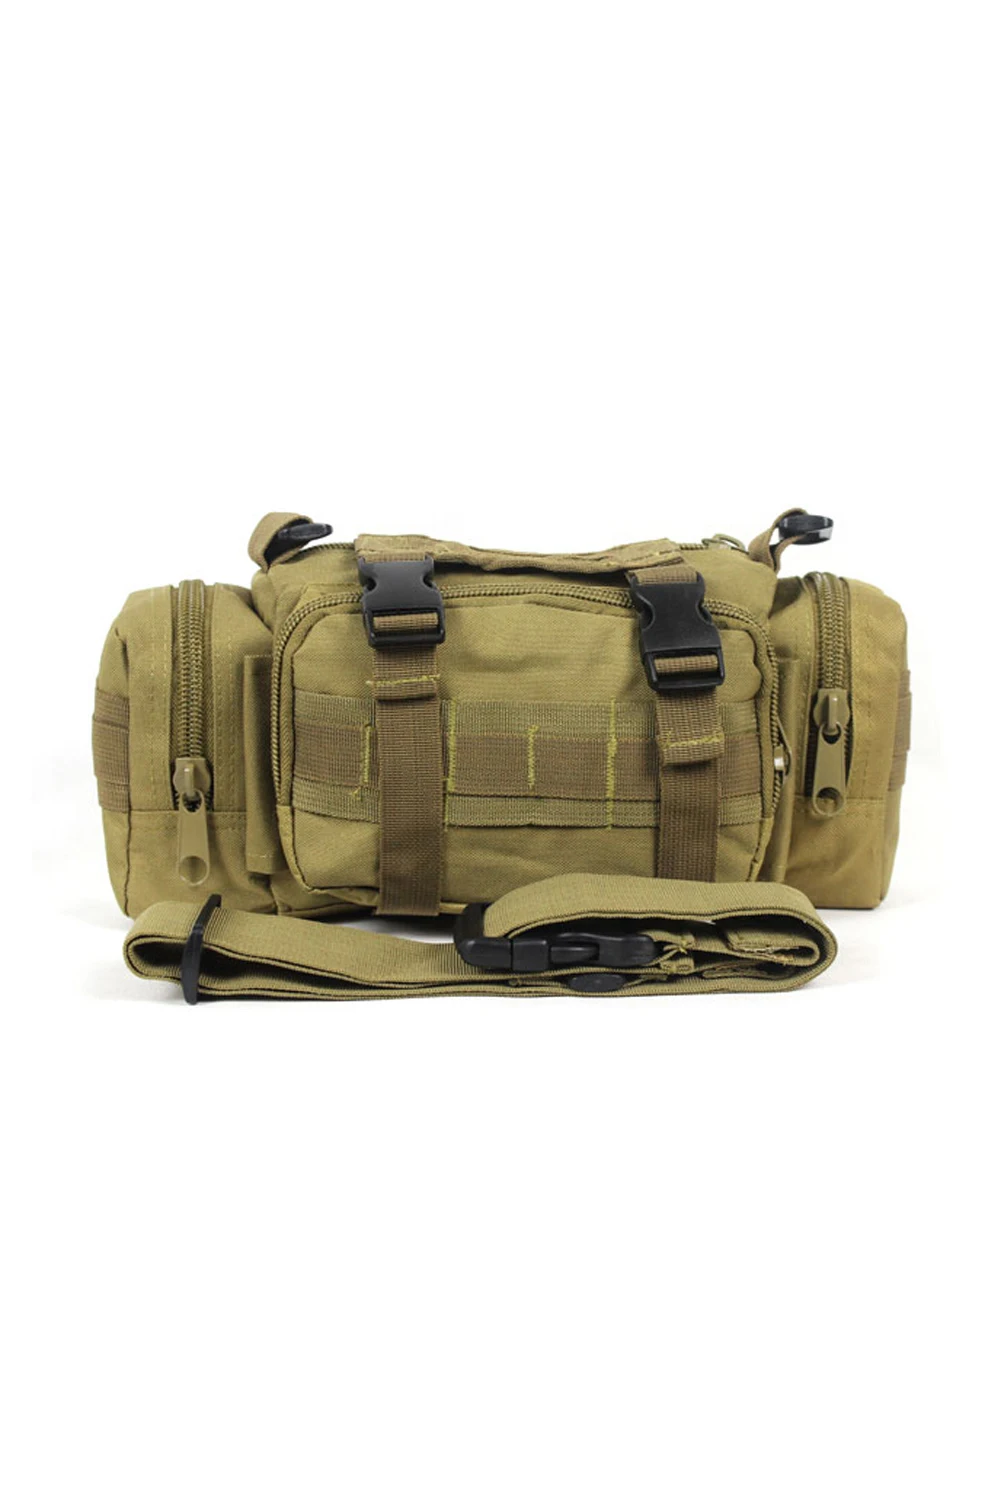 Snny menwaist пакет сумка Военная Униформа многоцелевой мешок грязь цвет